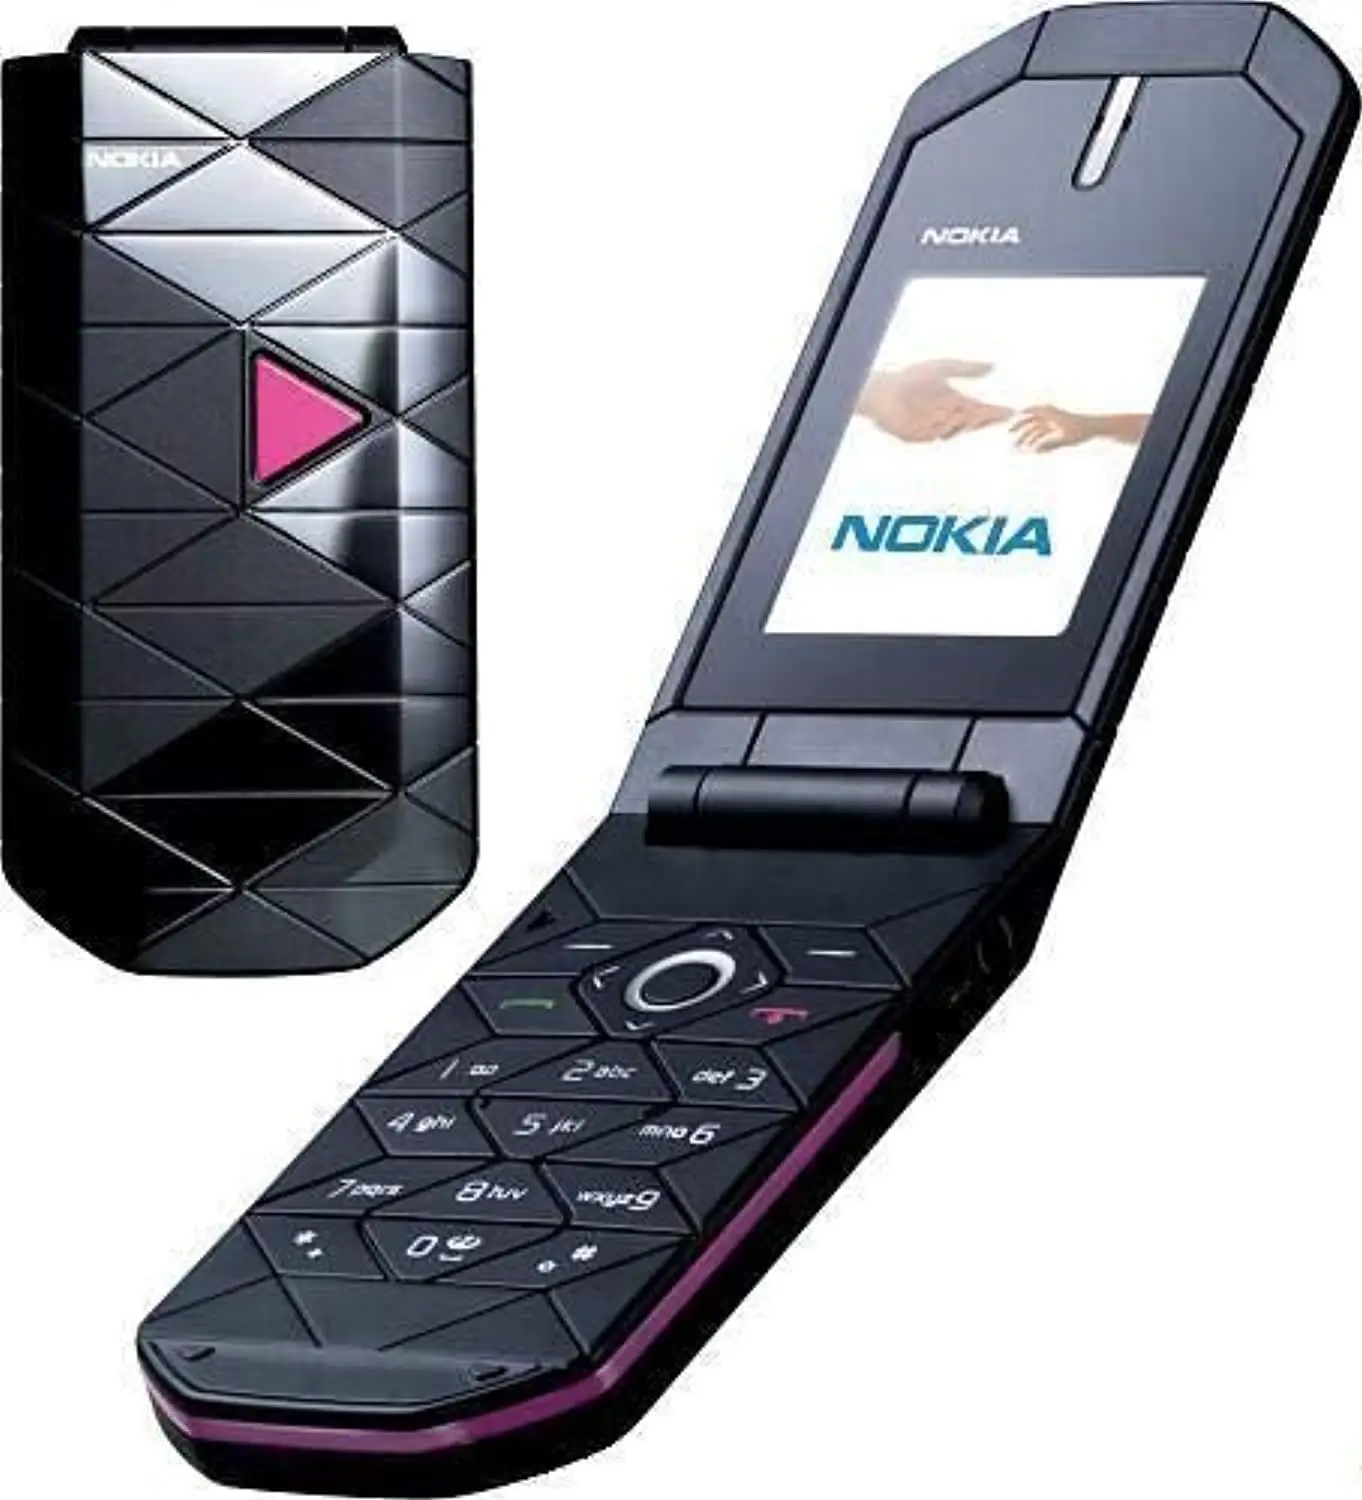 Nokia 7070 prizma ikinci el cep telefonu için ikinci el cep telefonu yüksek kalite flip telefon toptan ucuz fiyat hızlı teslimat